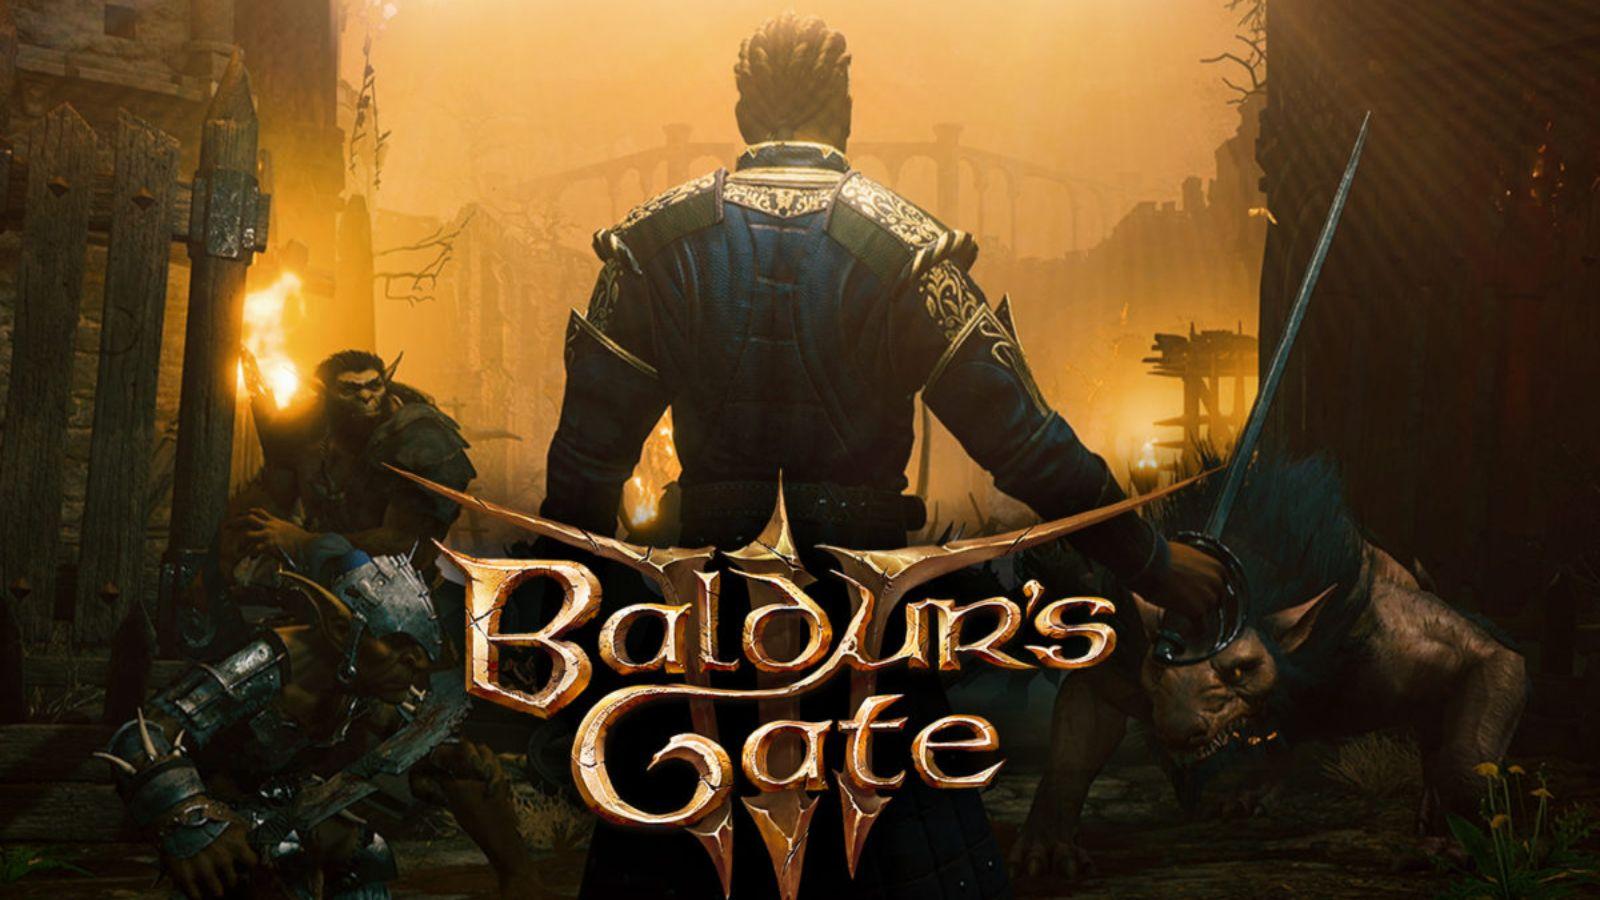 Baldur's Gate 3 voice actors